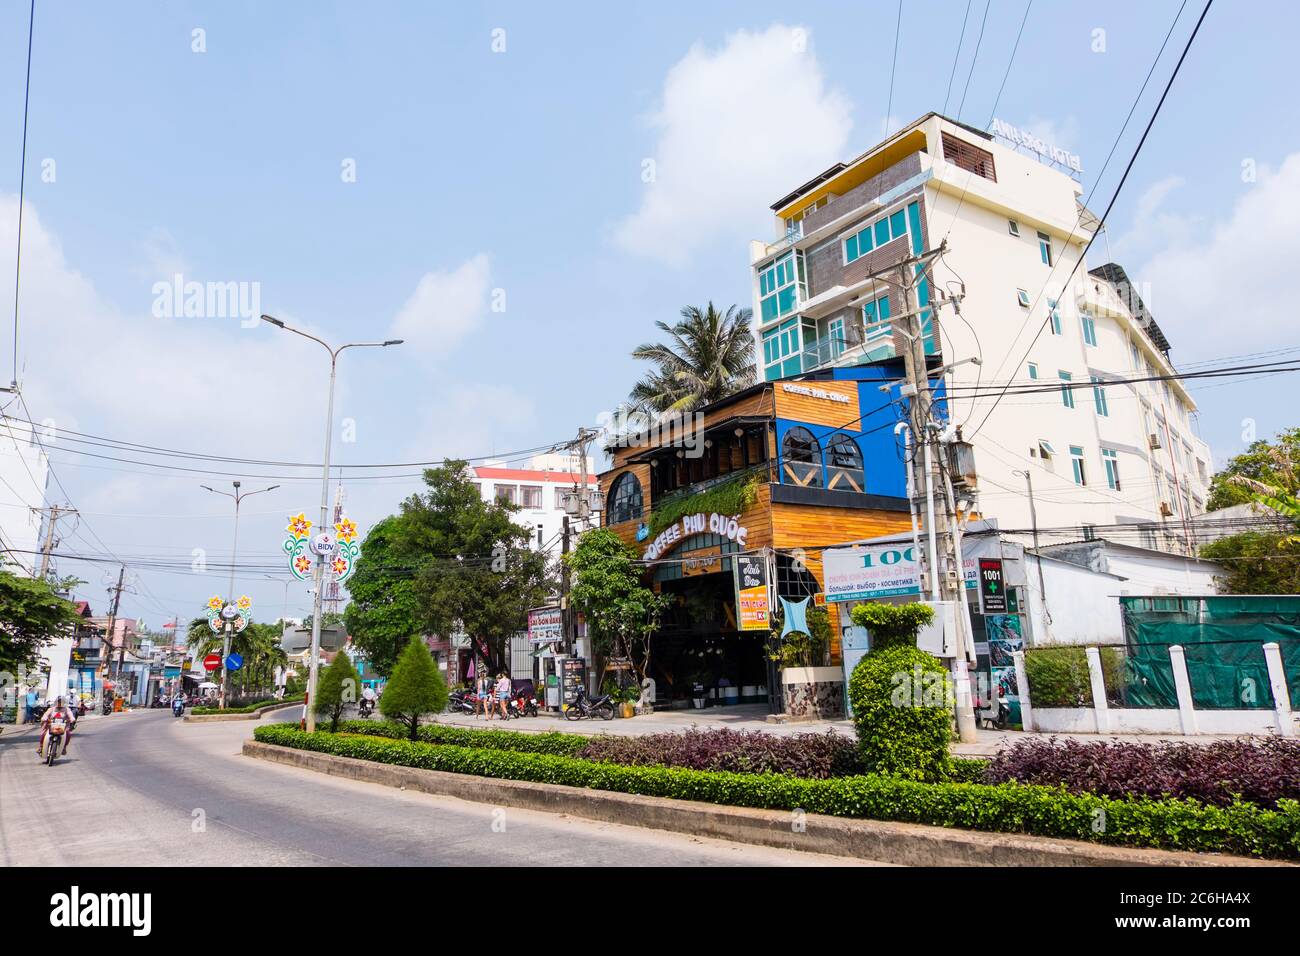 Duong Tran Hung Dao, main street, at Long Beach, Duong Dong, Phu Quoc, Vietnam, Asia Stock Photo